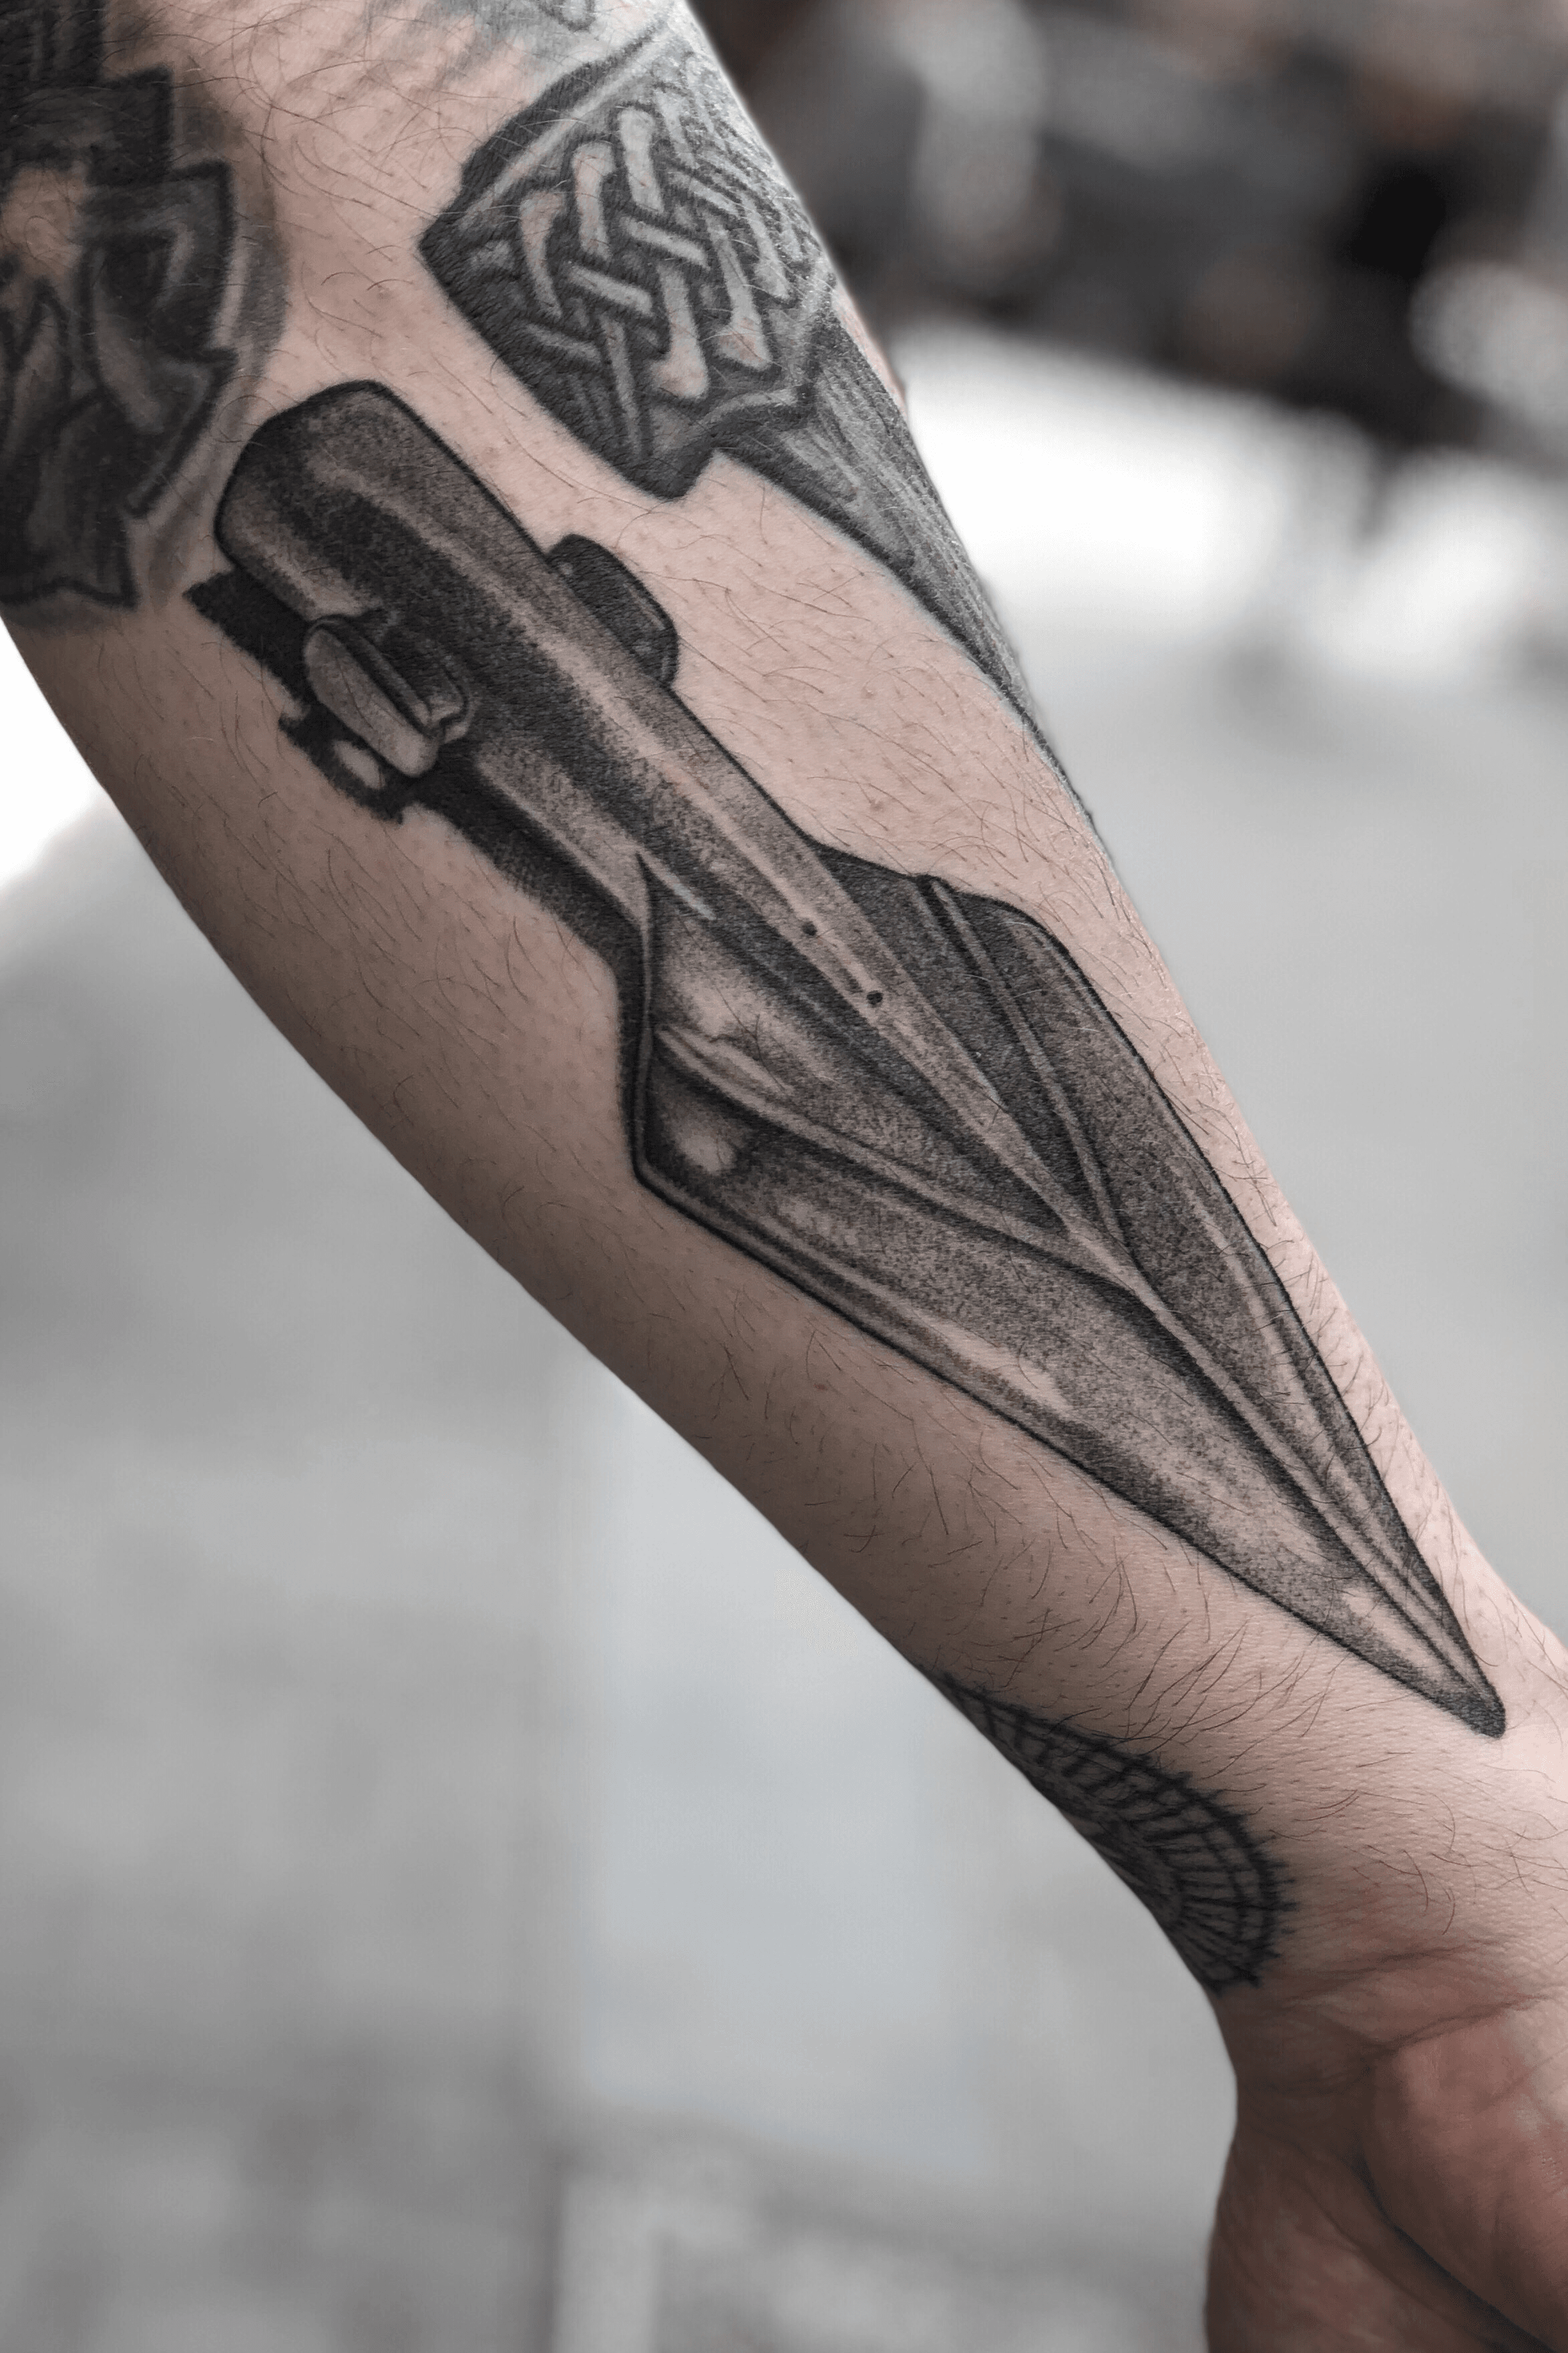 Spear head tattoo  Tattoogridnet